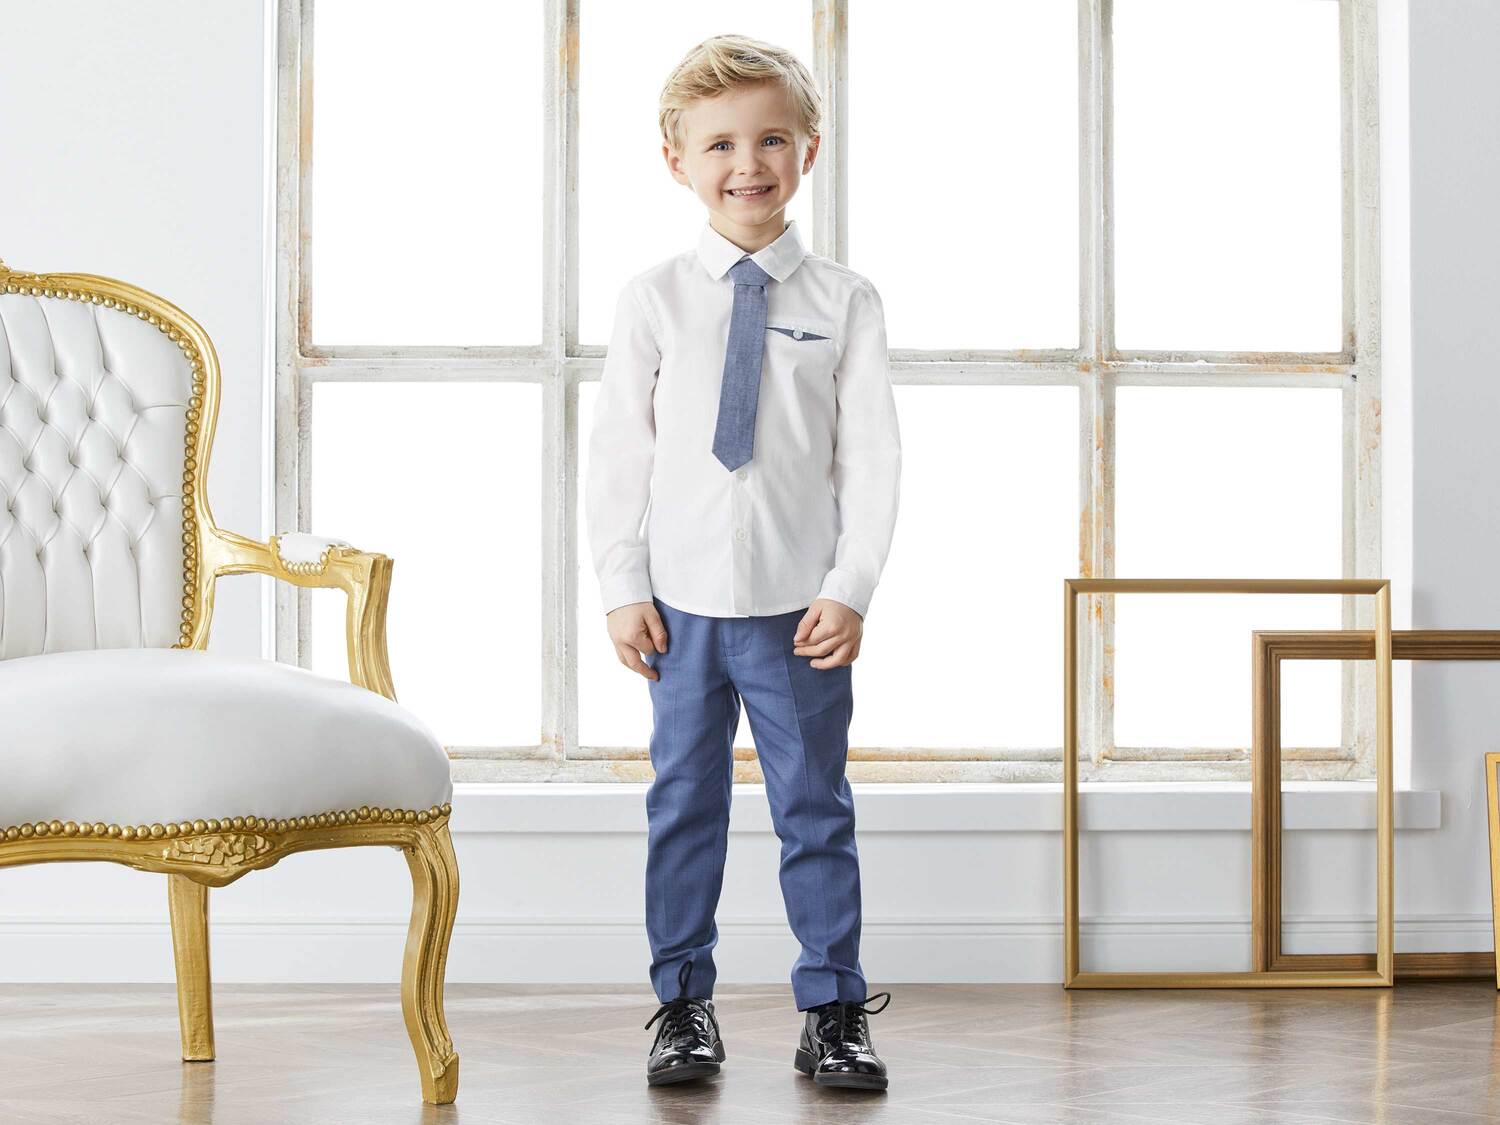 Koszula chłopięca z krawatem , cena 29,99 PLN 
- rozmiary: 92-116
- 100% bawełny
Dostępne ...